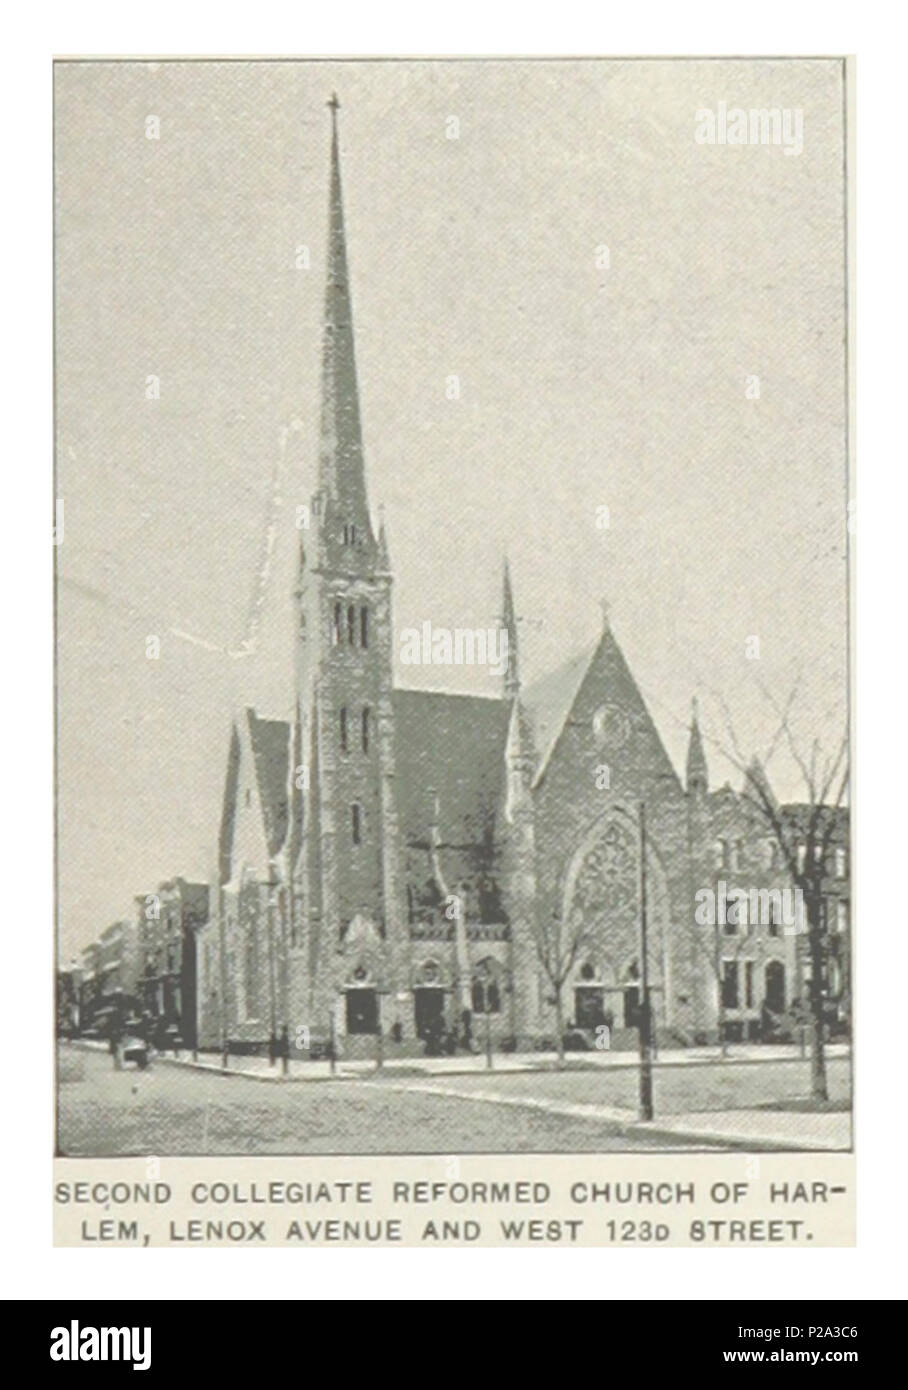 (König 1893, NYC) pg 345 zweite stiftskirche reformierte Kirche von Harlem, LENOX AVENUE UND WEST 123 D STREET. Stockfoto